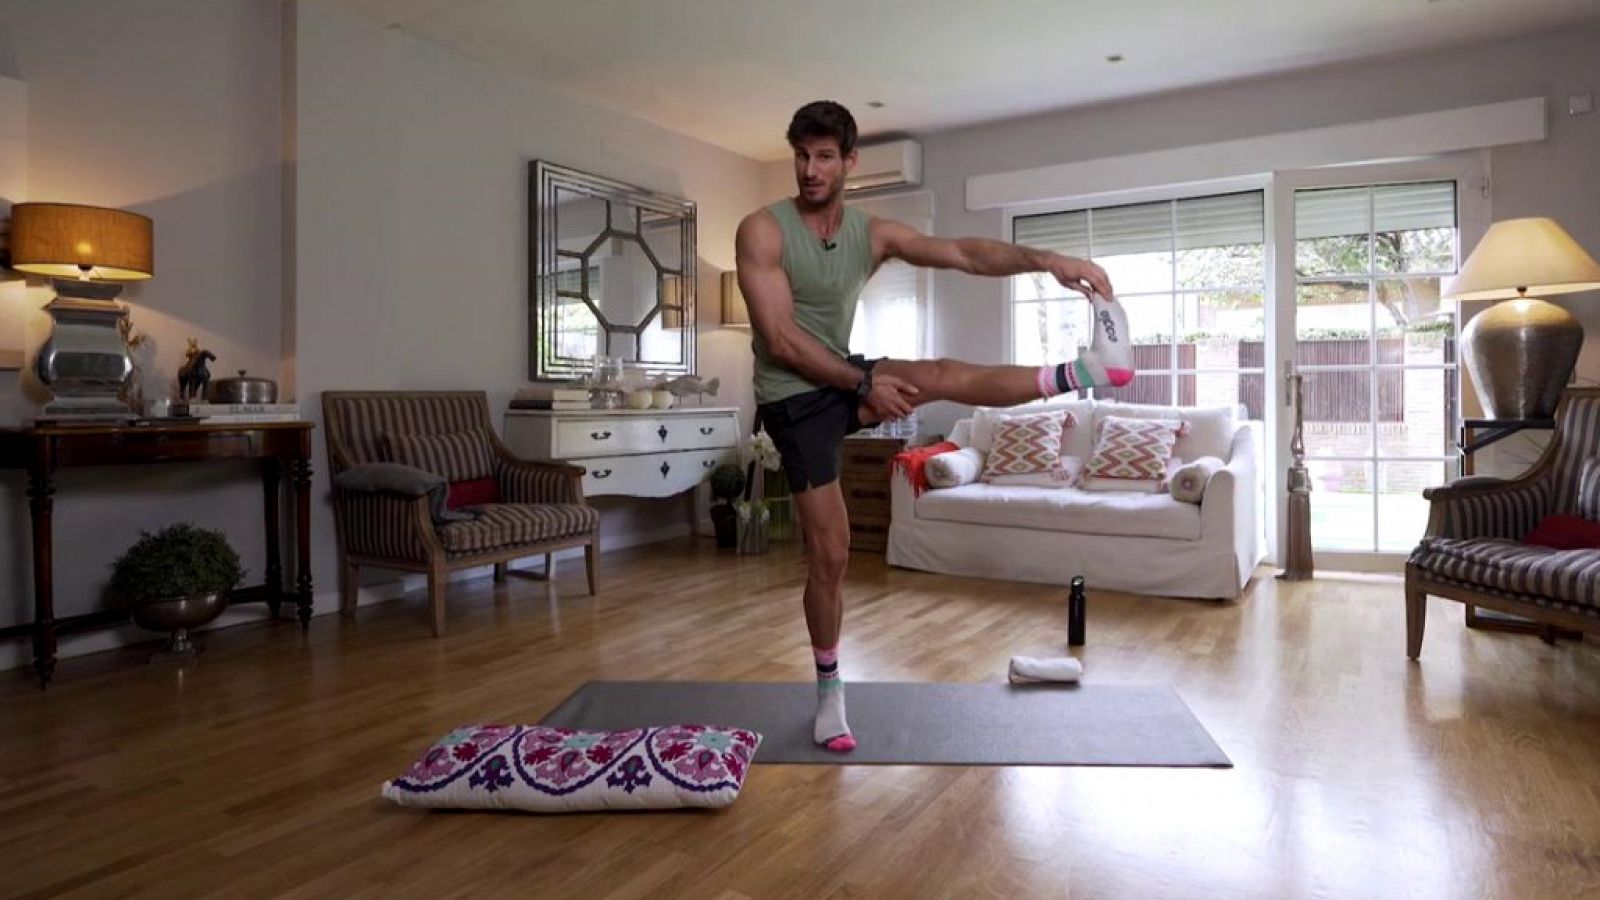 Muévete en casa - Cómo trabajar equilibrio y flexibilidad en casa